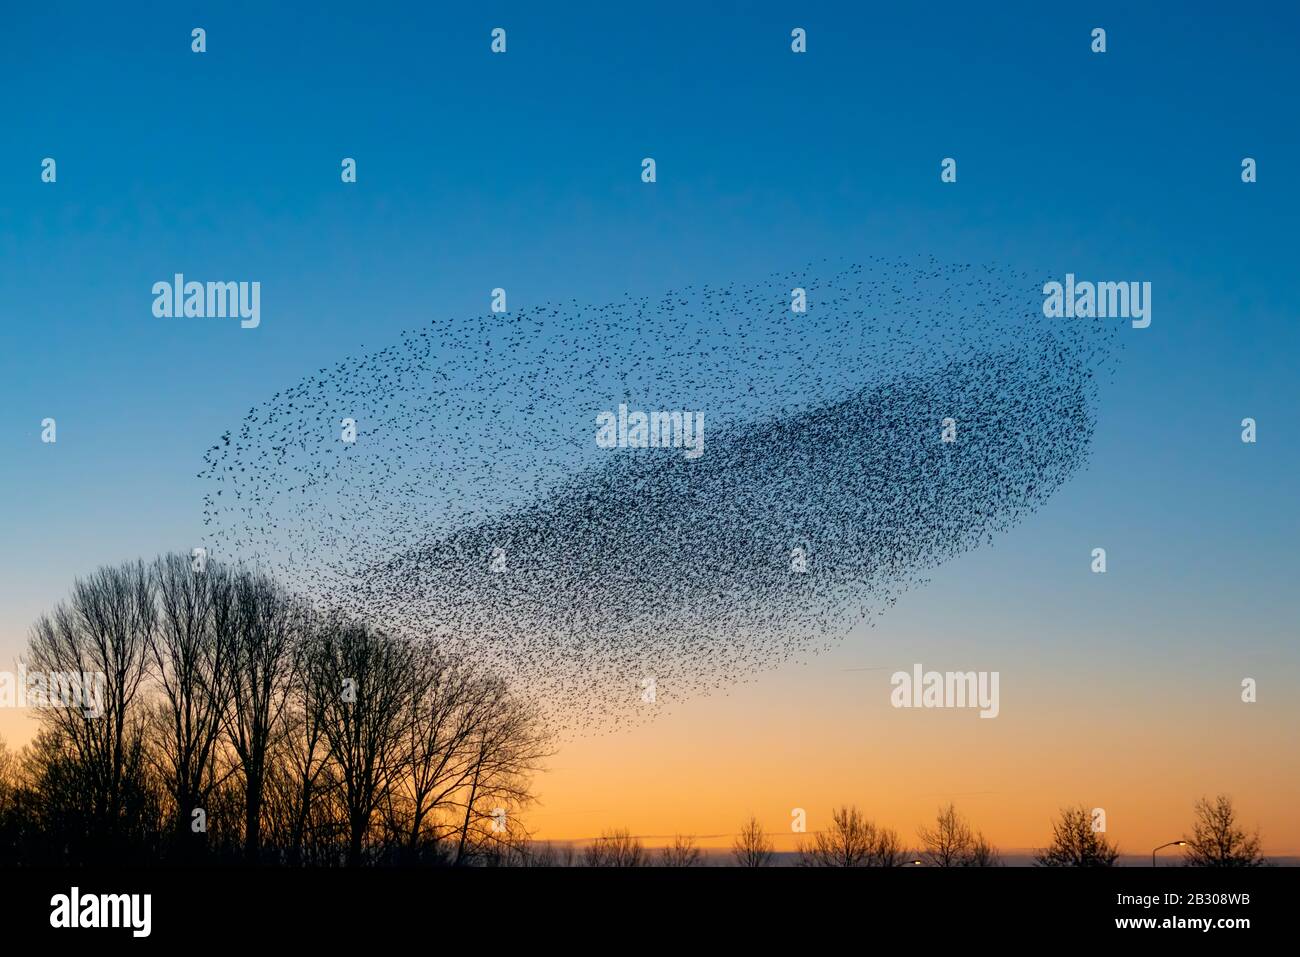 Beautiful large flock of starlings (Sturnus vulgaris), Geldermalsen in the Netherlands. starlings gathered in huge clouds.  Starling murmurations. Stock Photo